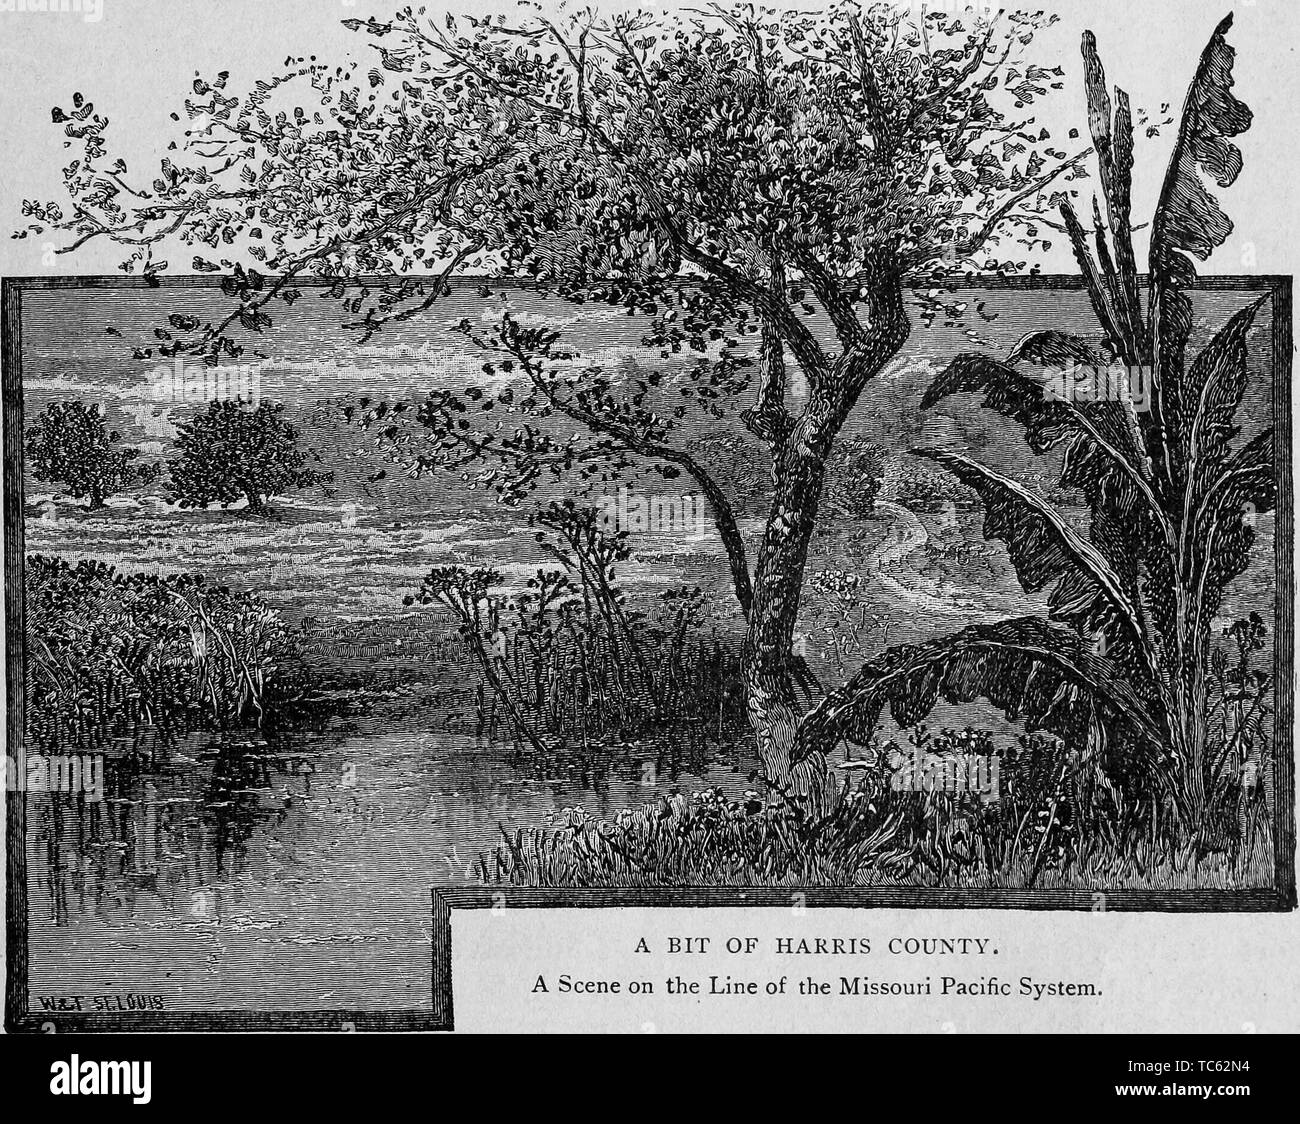 Graviert Szene des Missouri Pacific System, Harris County, Texas, aus dem Buch "Der Stadt Houston' von Andrew Morrison, 1890. Mit freundlicher Genehmigung Internet Archive. () Stockfoto